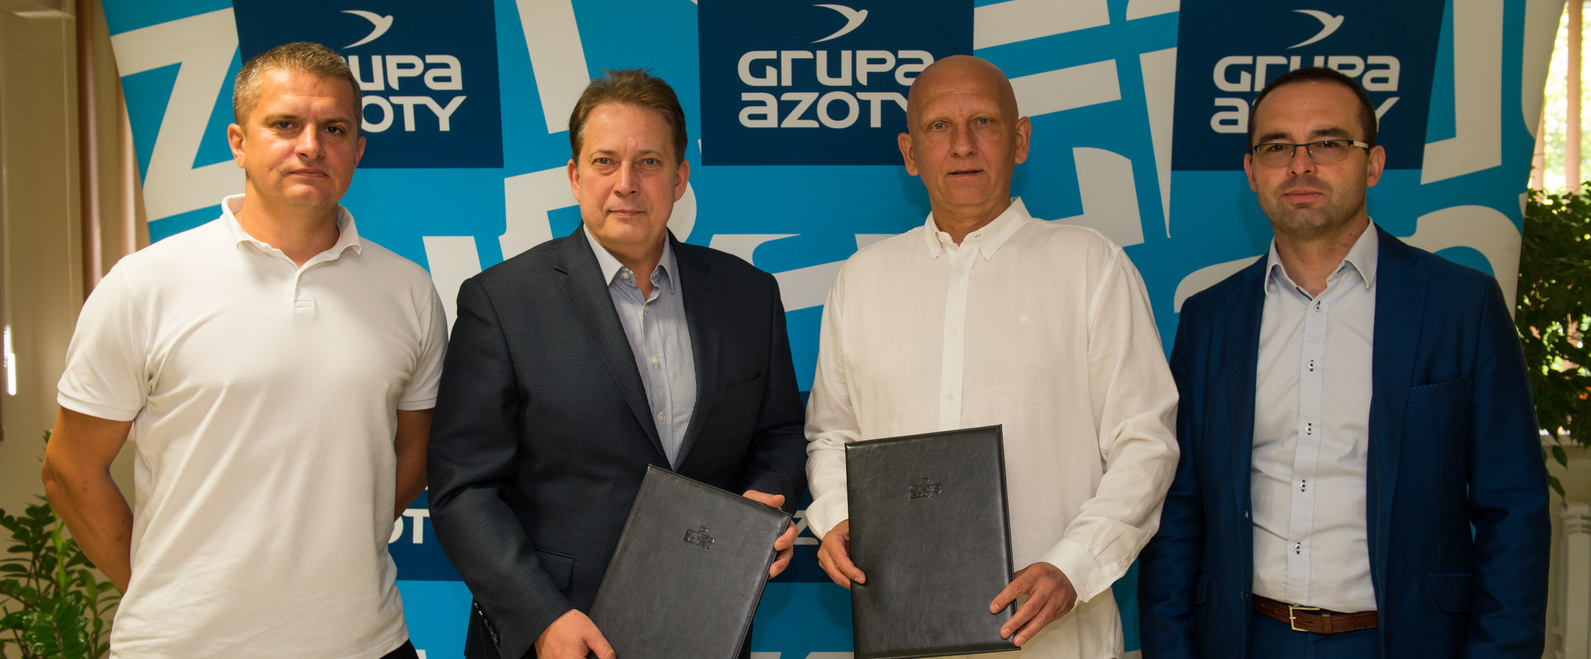 Grupa Azoty ZAK S.A. partnerem koszykówki. Podpisanie umowy z I-ligowym Klubem Sportowym Pogoń Prudnik